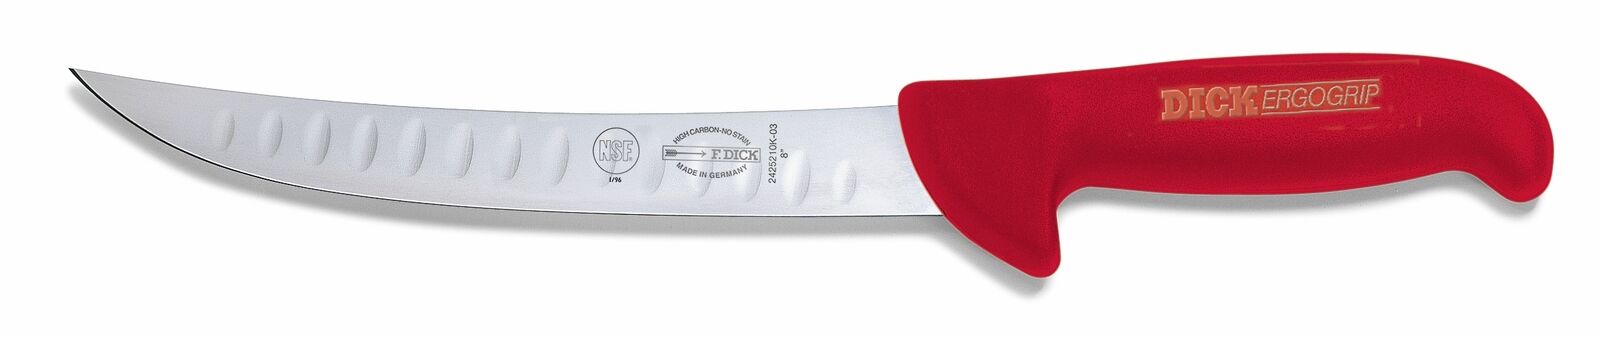 F. Dick (8242521K-03) 8" Breaking Knife, Kullenschliff, Red Handle-cityfoodequipment.com